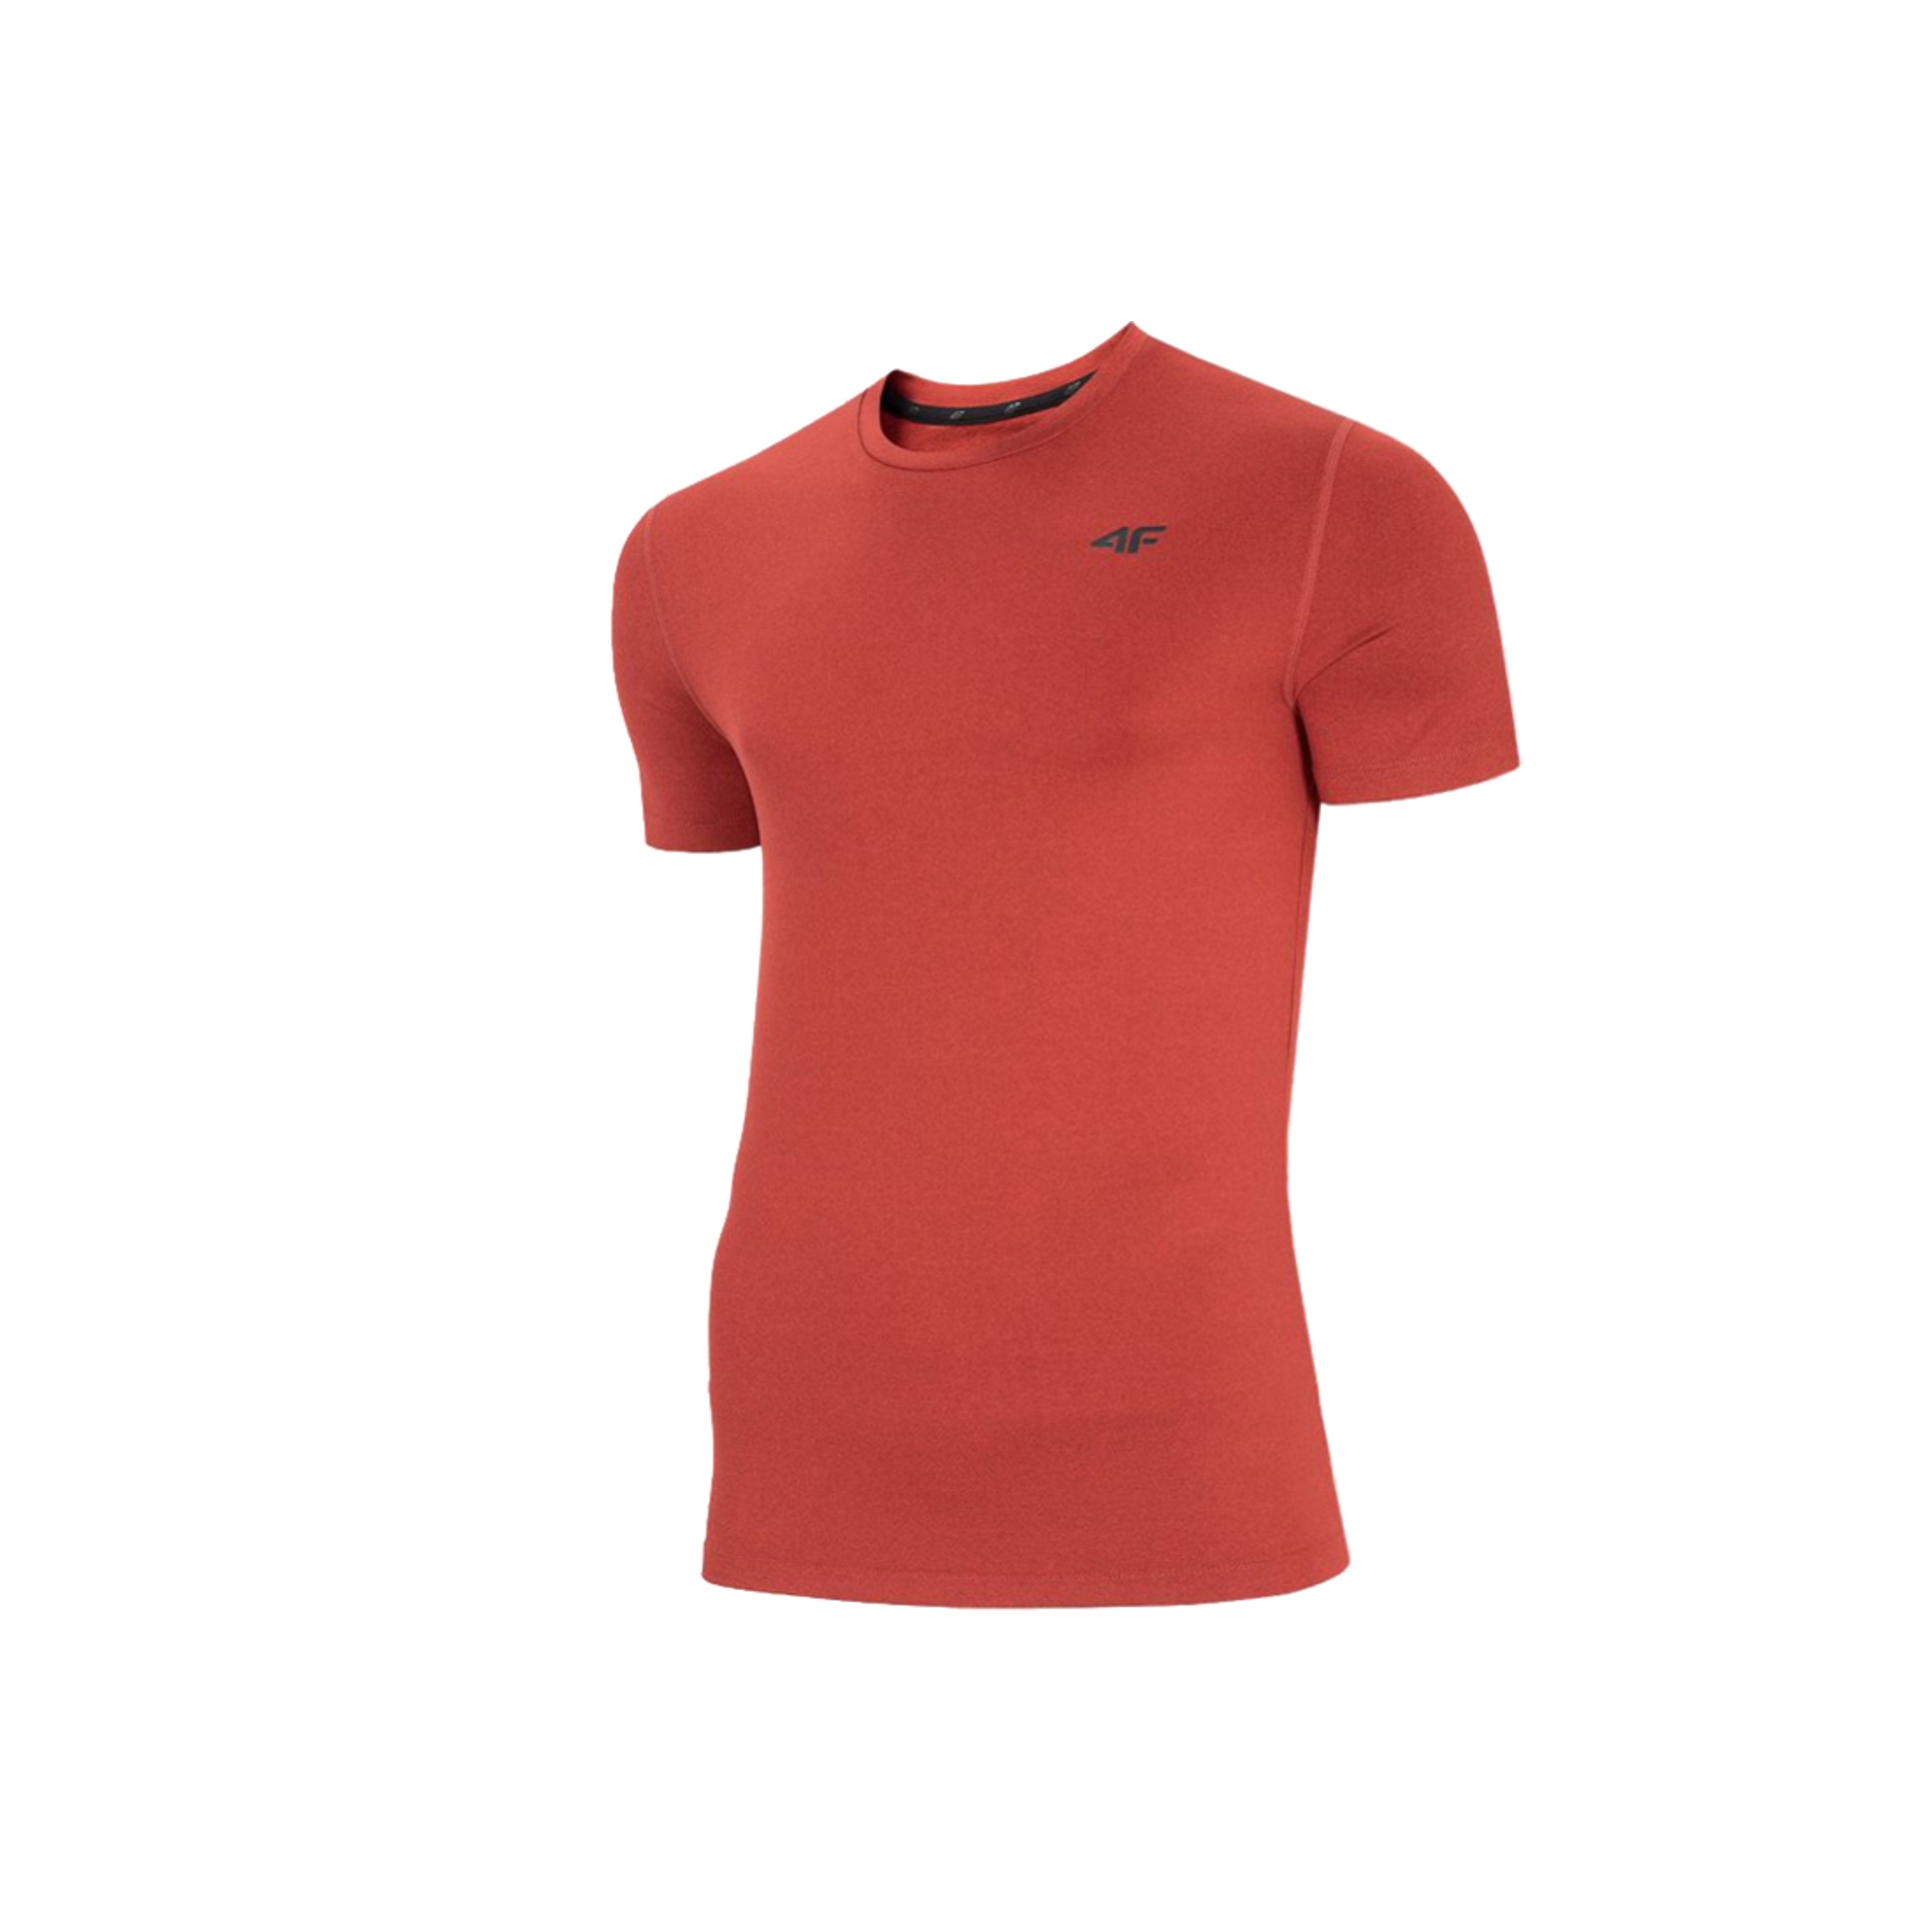 Camiseta 4f Clothes Nosh - rojo - 